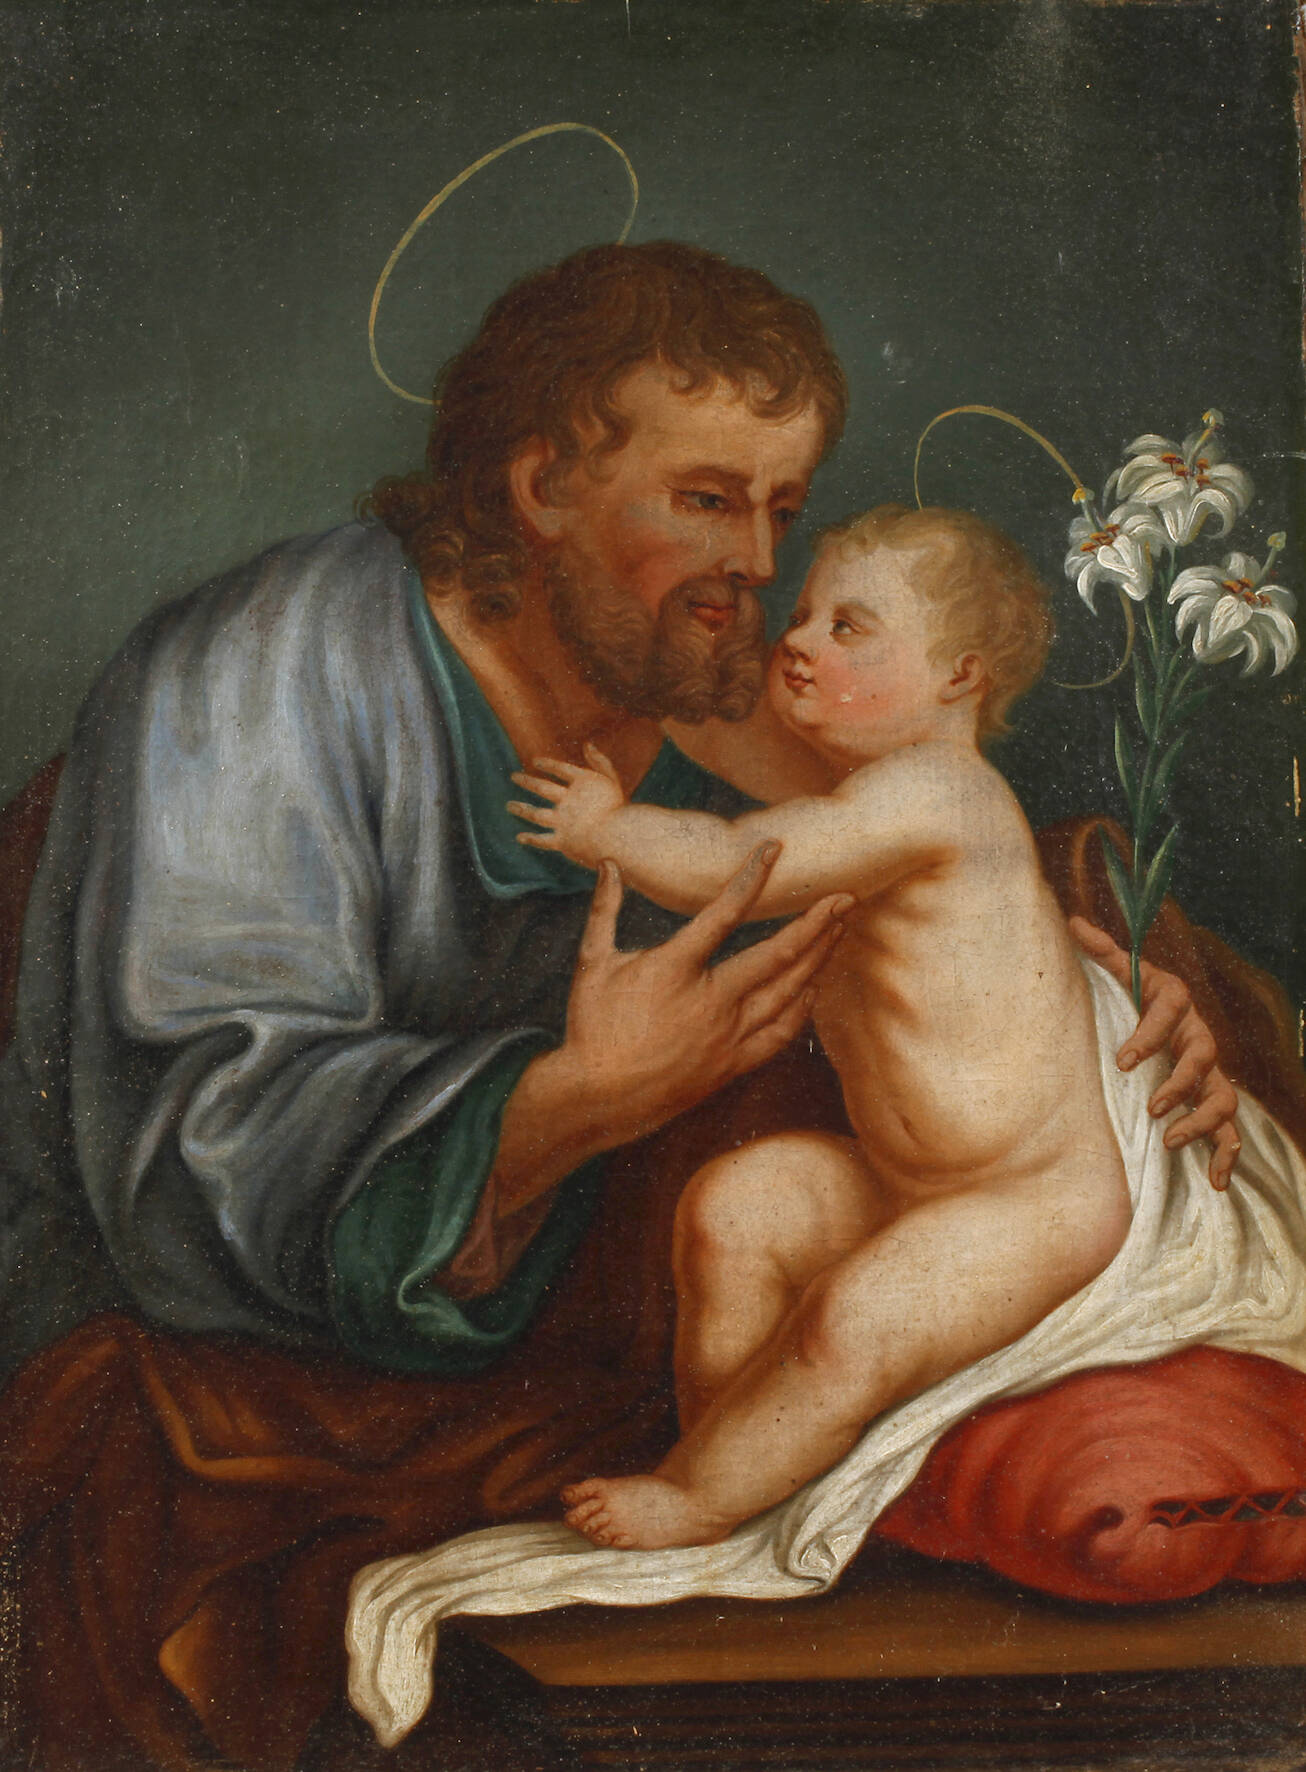 Jesus von Nazaret mit seinem Vater Josef